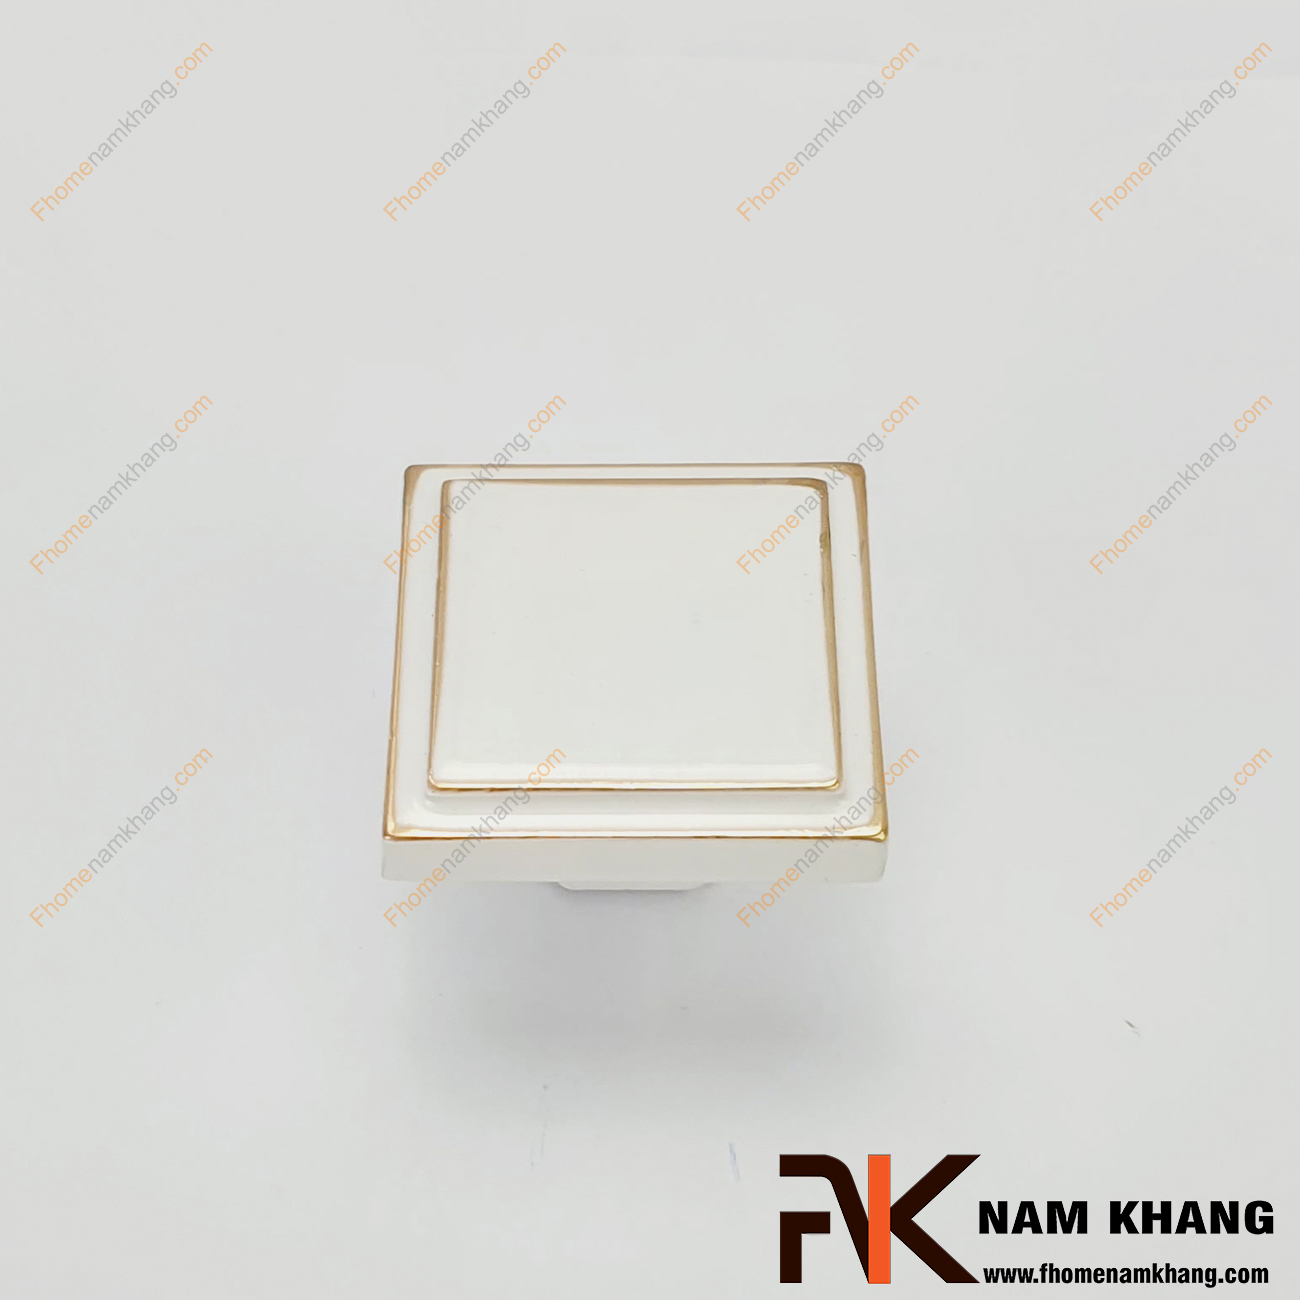 Tay nắm tủ dạng vuông màu trắng viền vàng NK219-T có thiết kế đơn giản từ hợp kim cao cấp với khuôn dạng đầu vuông và đế tròn đứng. Sản phẩm giúp thực hiện thao tác đóng mở cánh cửa tủ trở nên dễ dàng và thuận tiện. 